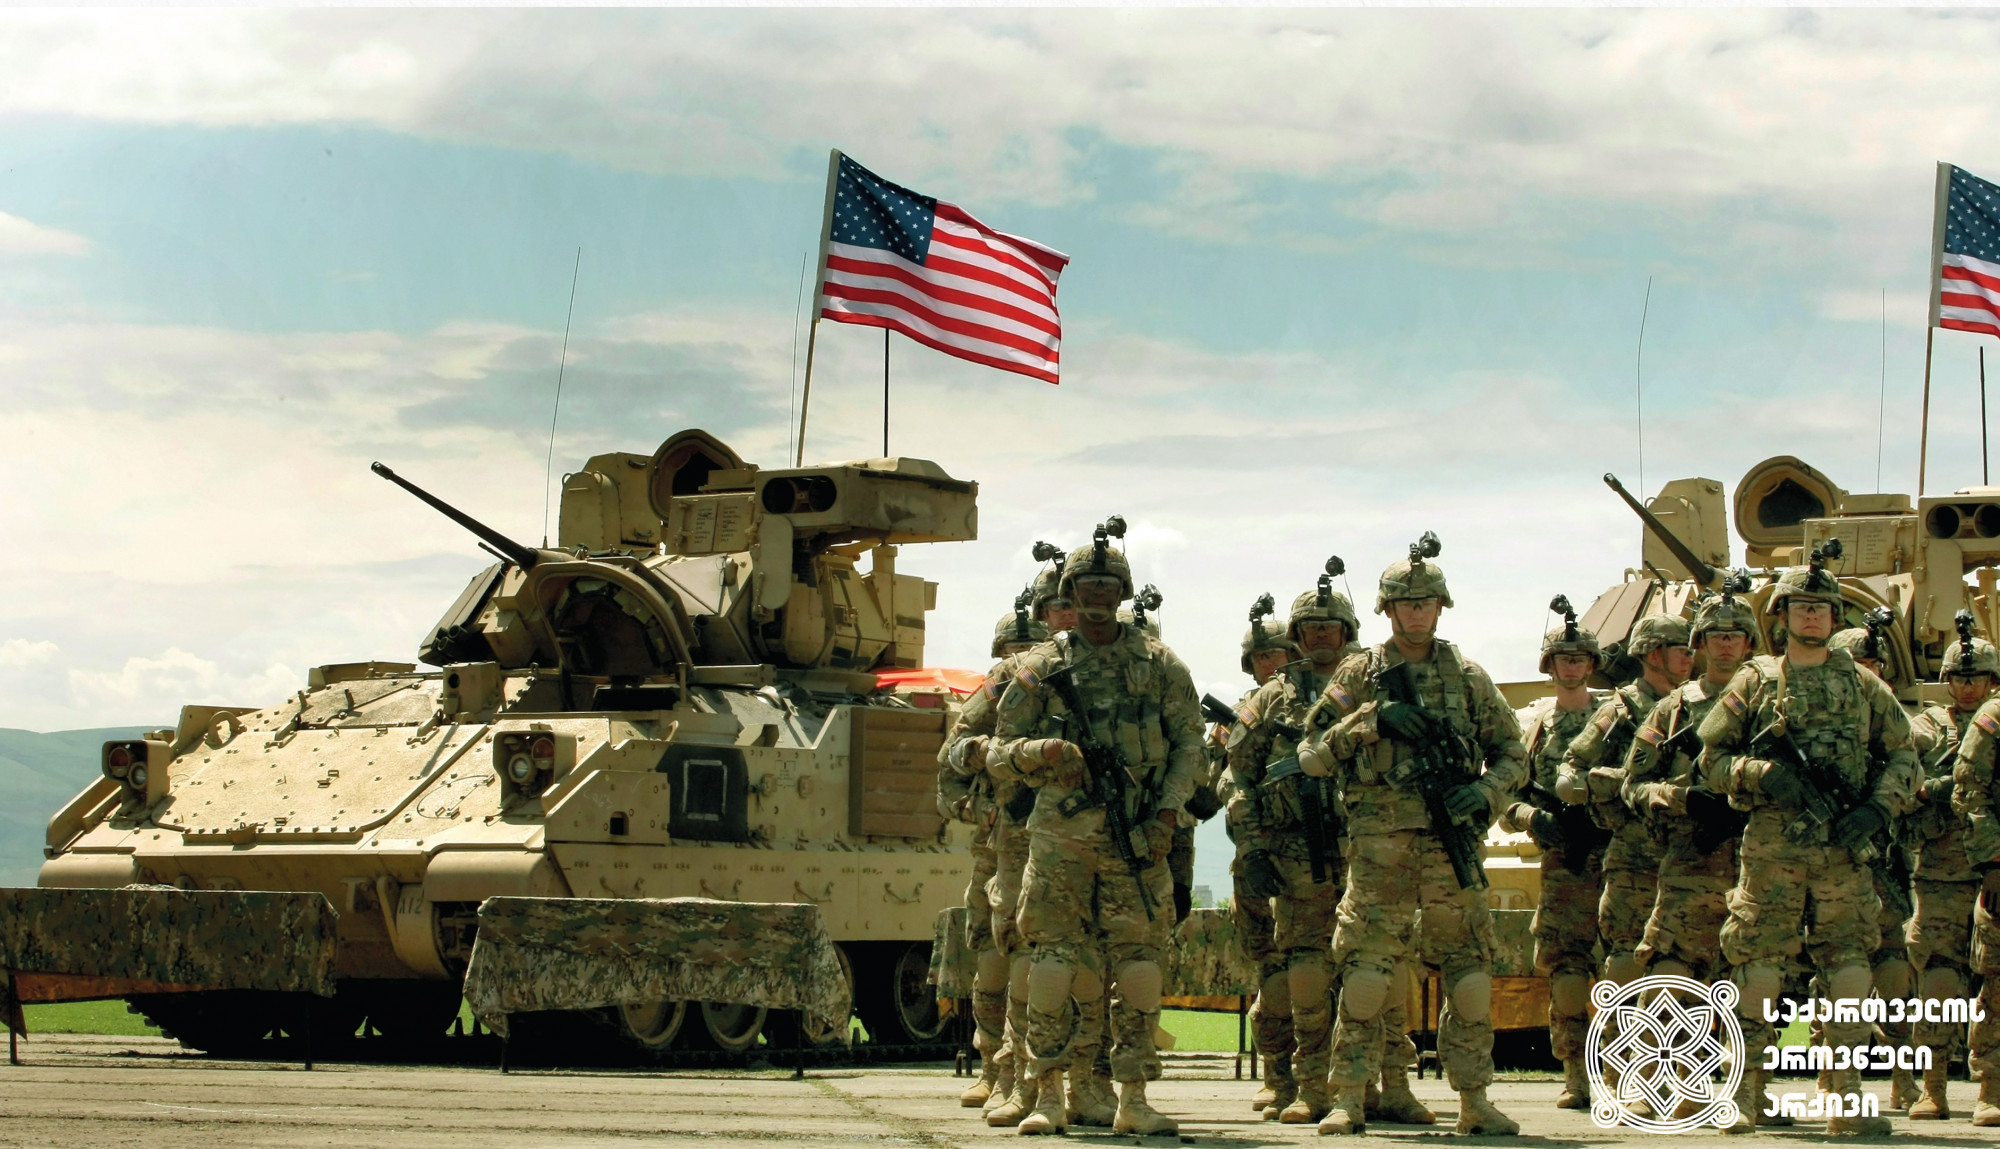 ქართულ-ამერიკული ერთობლივი სამხედრო სწავლება „ღირსეული პარტნიორი“. ვაზიანი. 2015 წლის მაისი. <br>
AP ფოტო/შახ აივაზოვი <br>
U.S. and Georgia joint military exercise “Noble Partner”. 
<br> Vaziani. May 2015.<br>
AP Photo/Shakh Aivazov